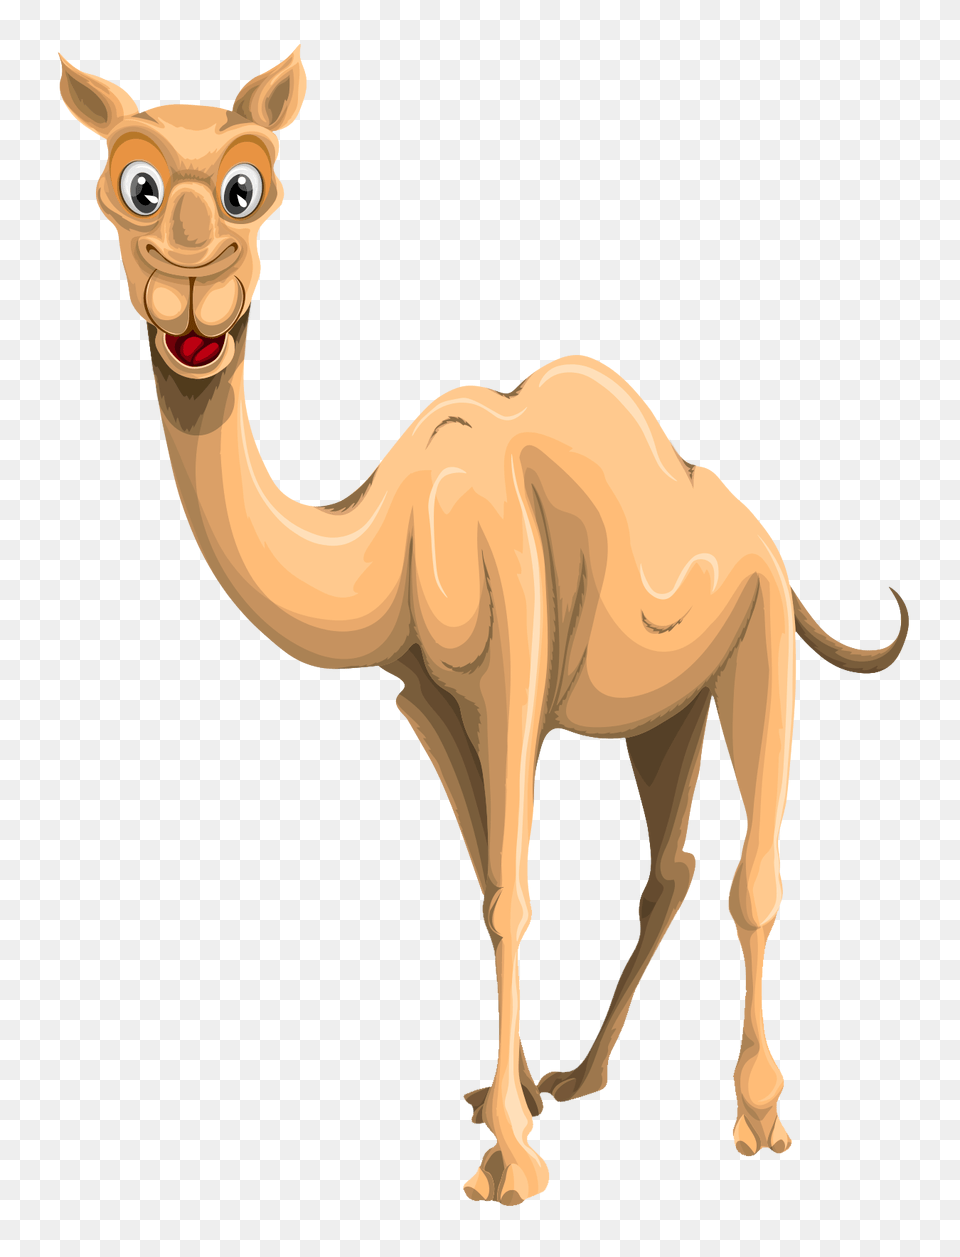 Camel, Animal, Mammal, Kangaroo Png Image